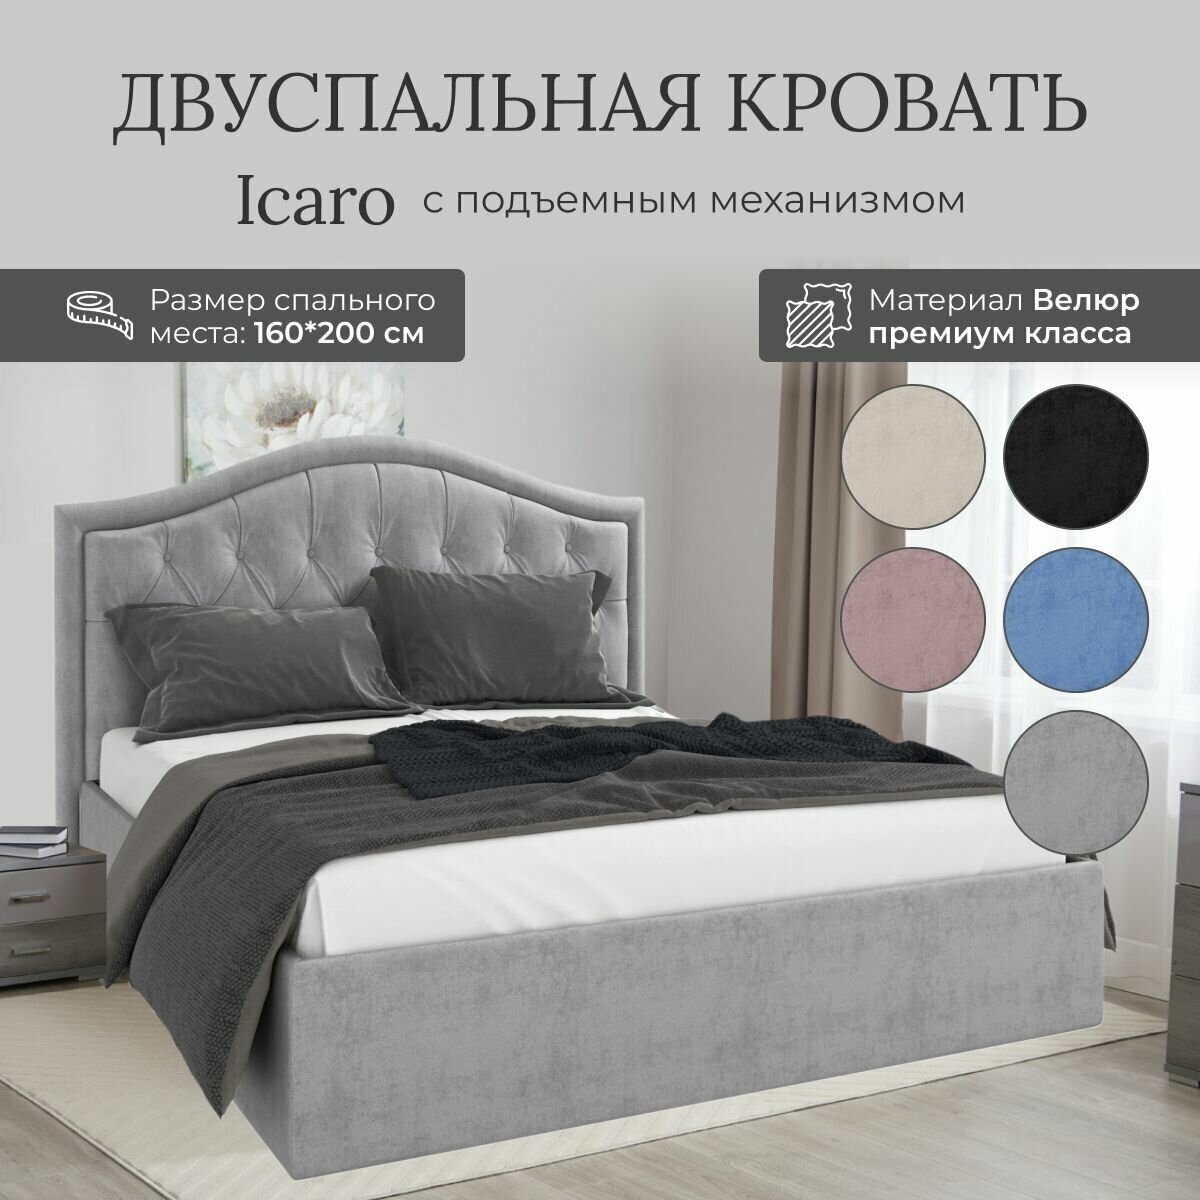 Кровать с подъемным механизмом Luxson Icaro двуспальная размер 160х200